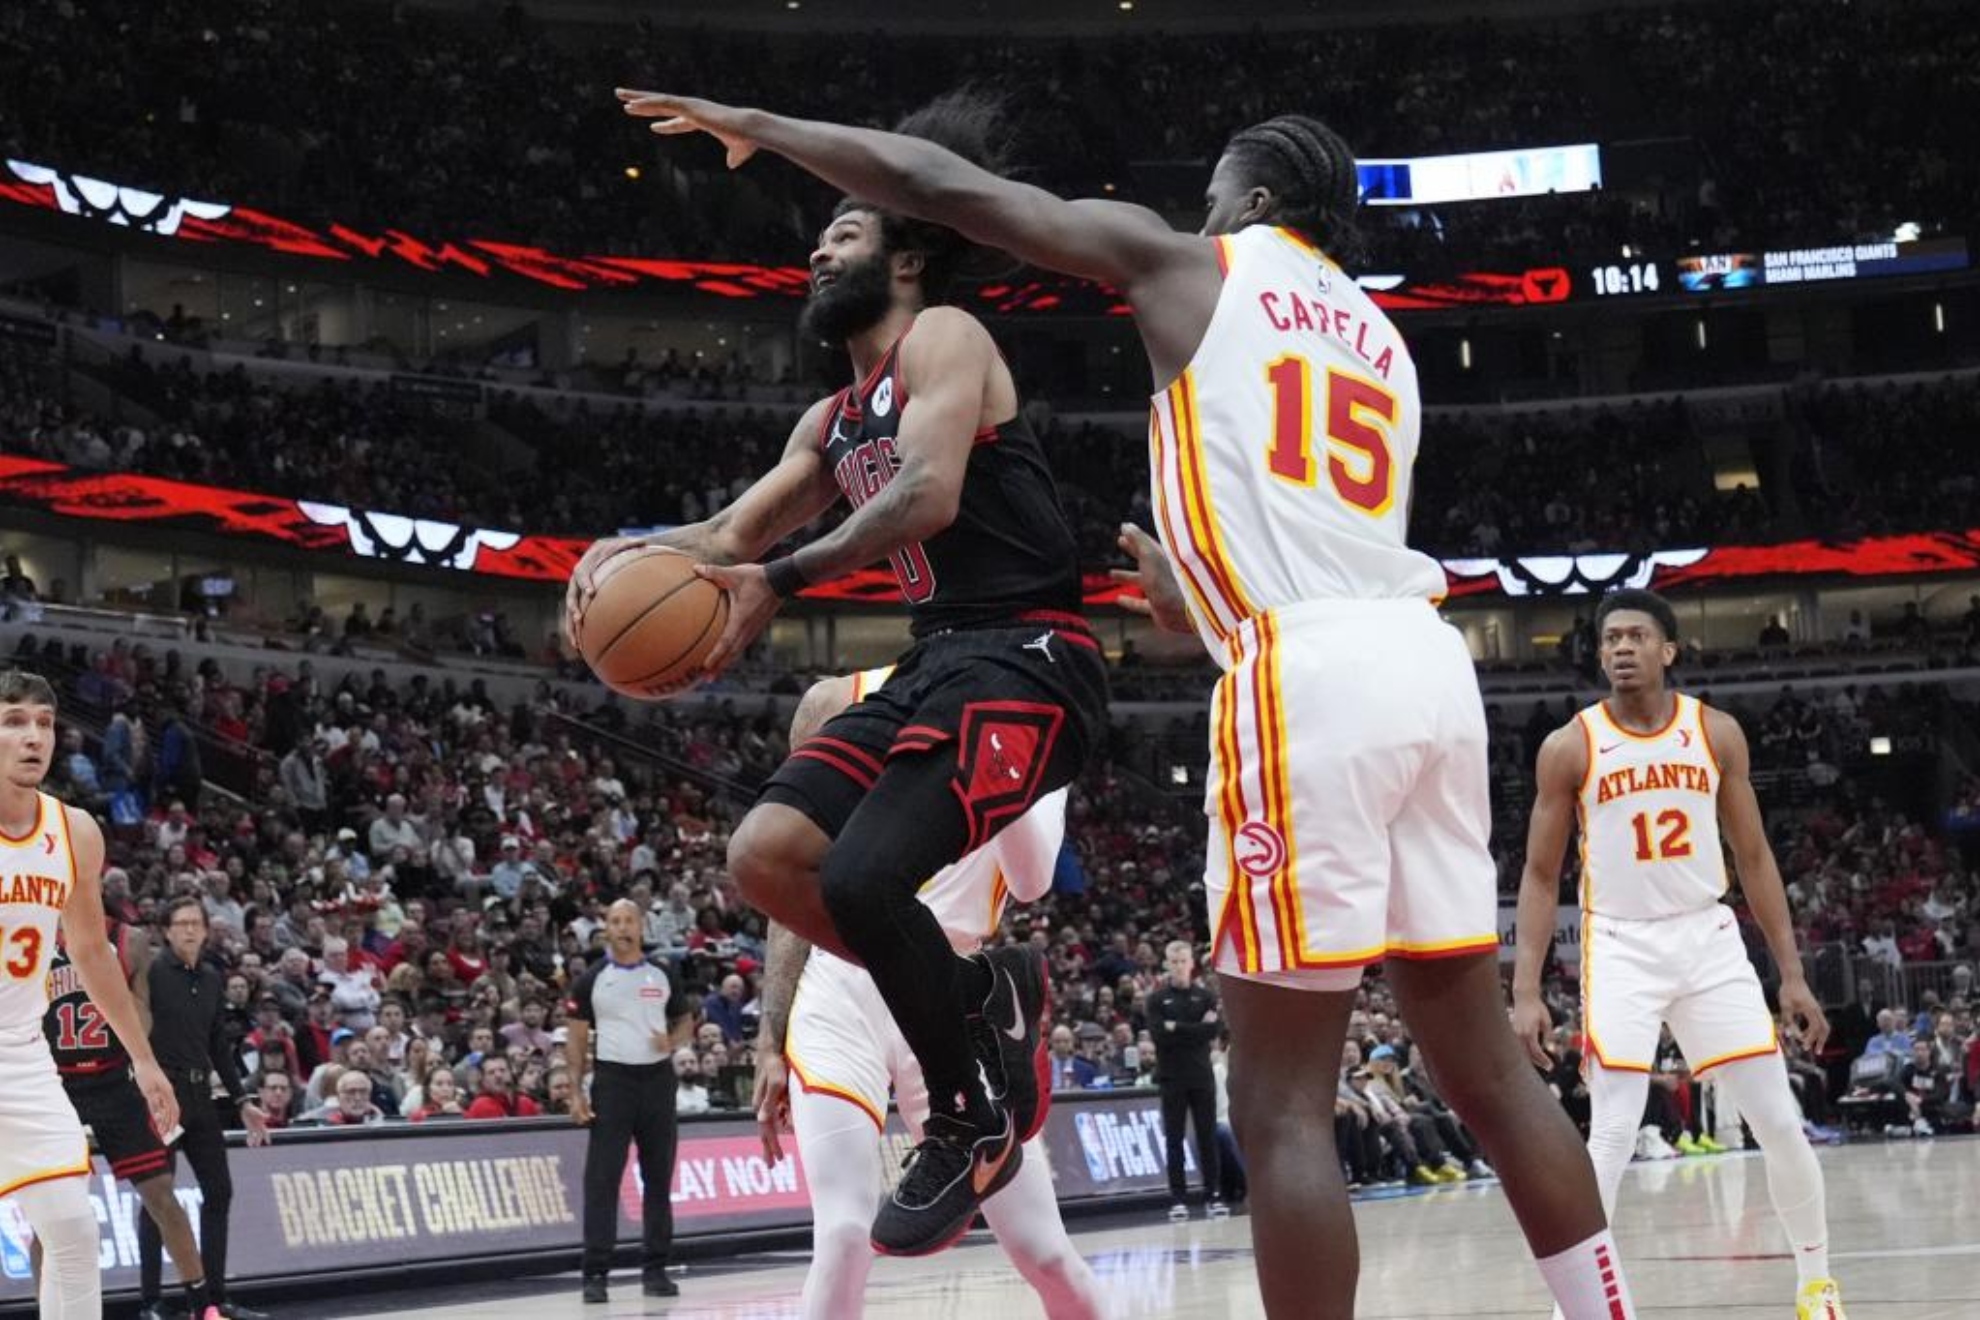 La fiebre anotadora del imitador de Michael Jordan propulsa a los Chicago Bulls